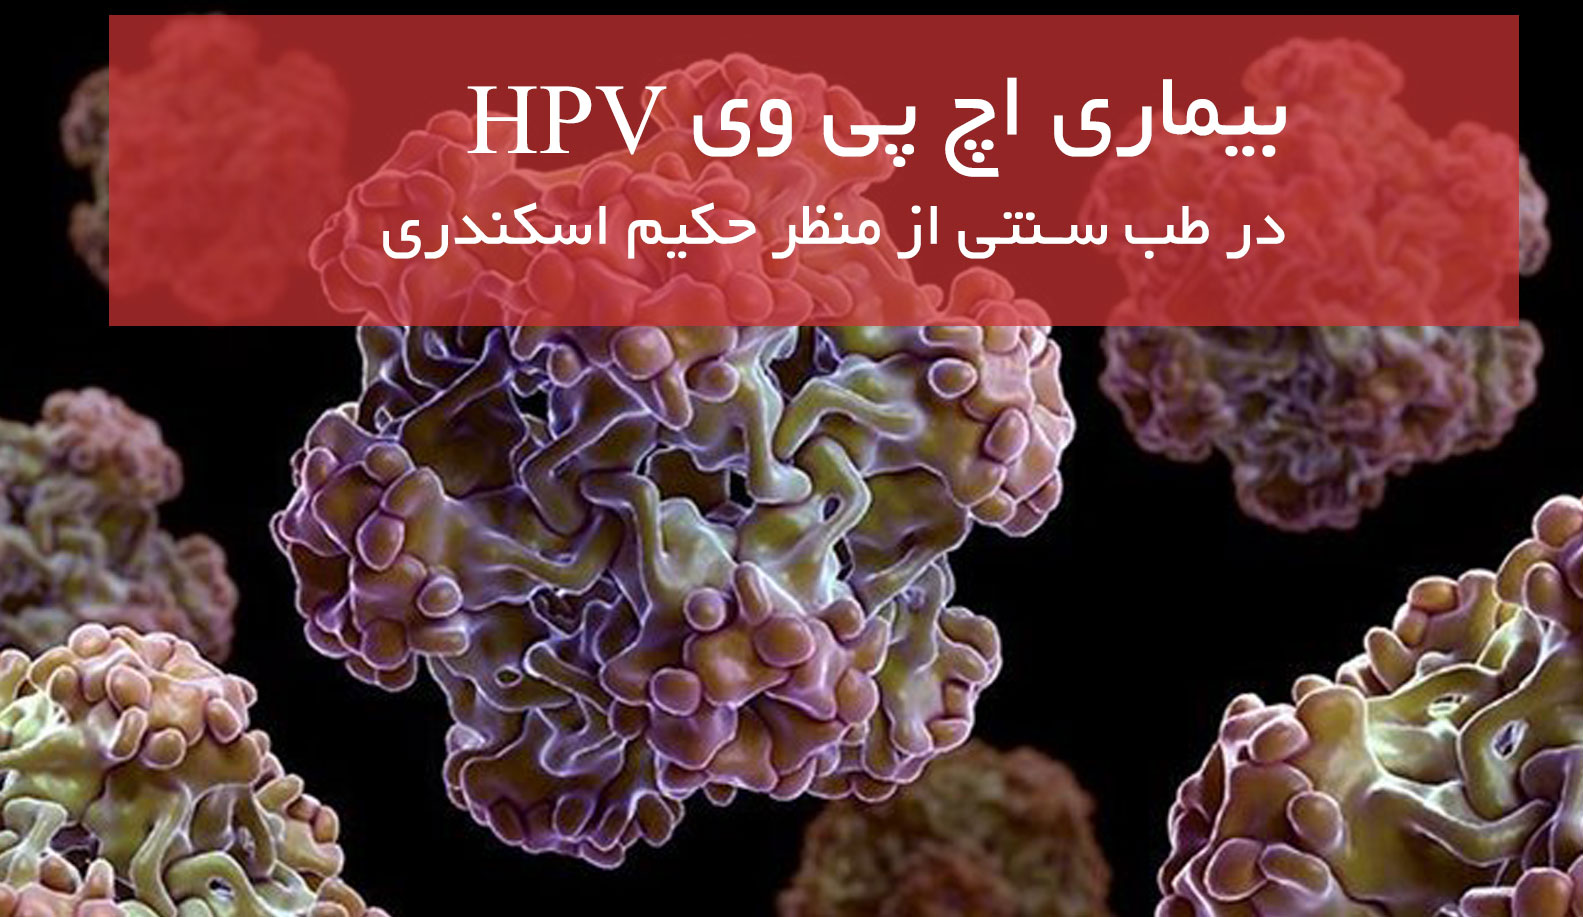 درمان بیماری HPV زگیل تناسلی در طب سنتی از منظر حکیم اسکندری